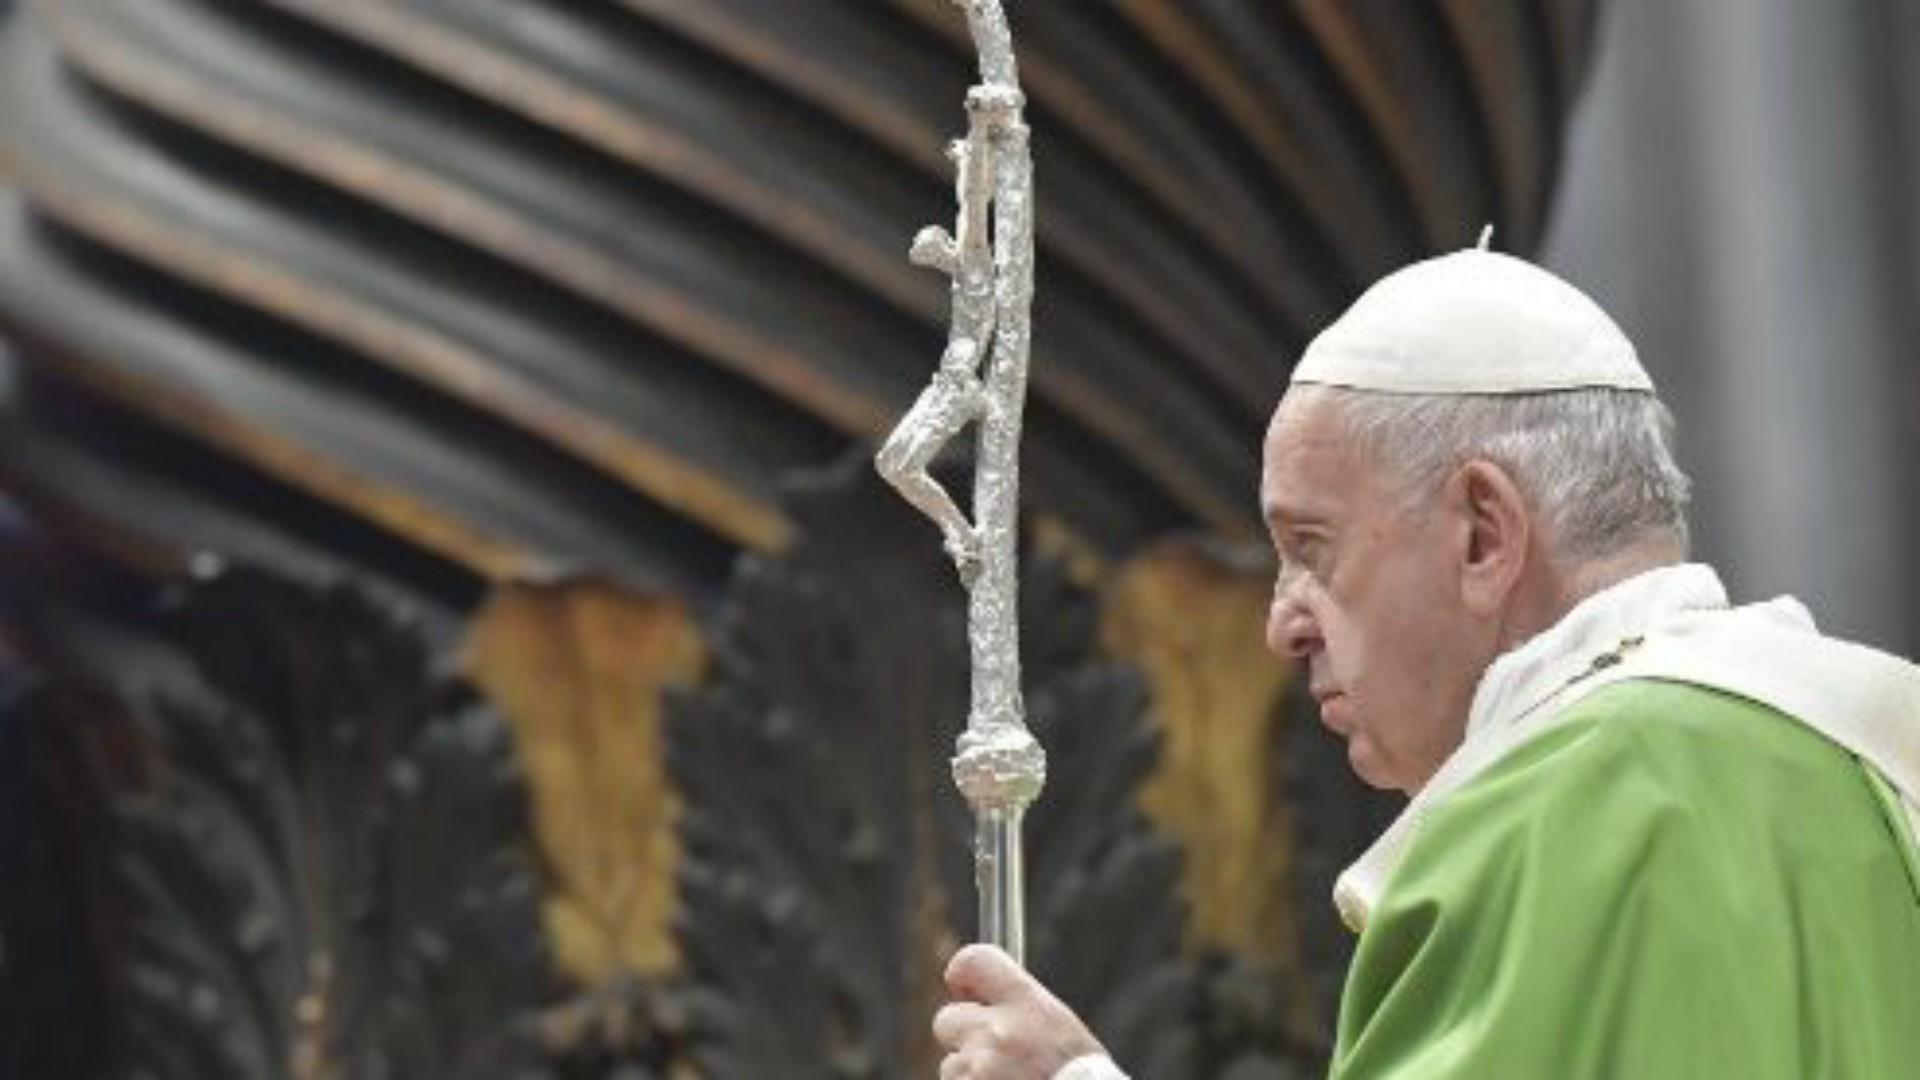 Le pape François dénonce "l'indifférence" envers les plus pauvres | © Vatican Media